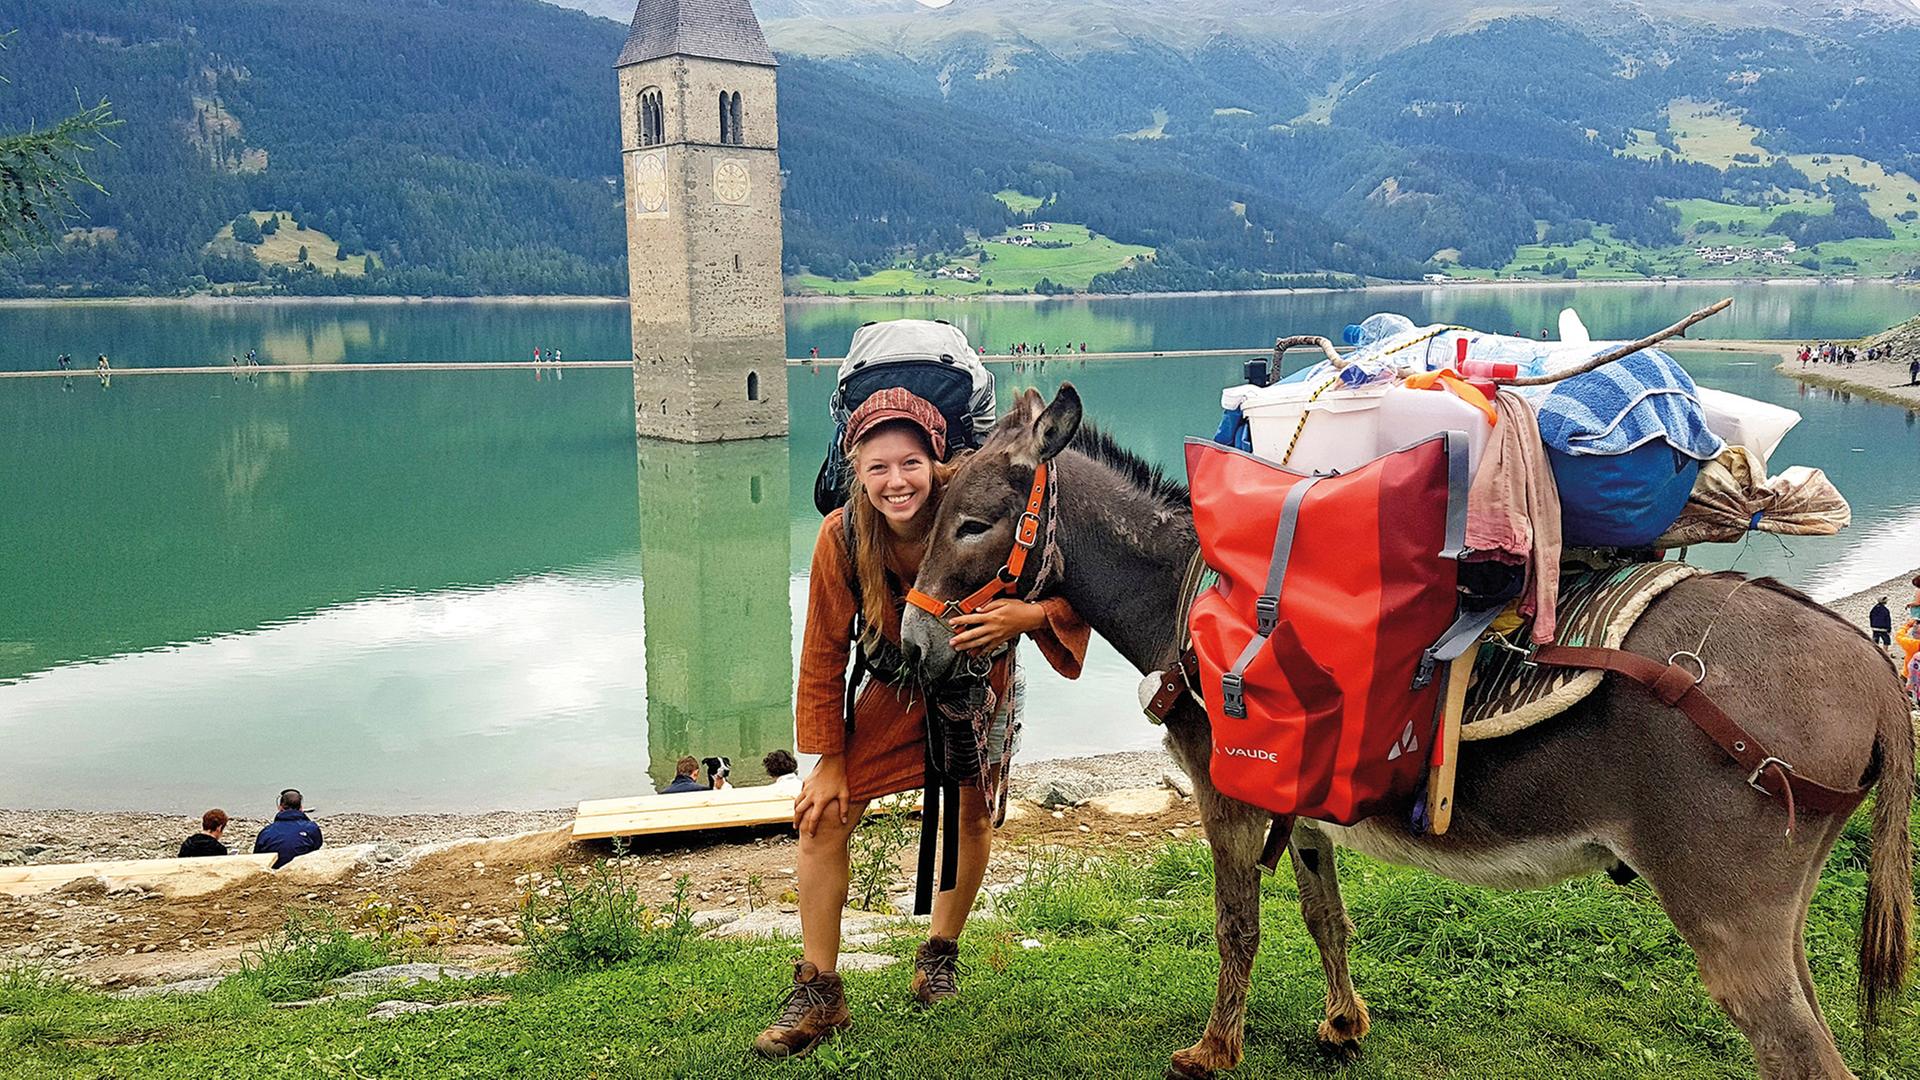 Lotta unterwegs auf ihrer Wanderung mit ihrem Esel Johnny, das Gepäcktragen teilen sie sich.